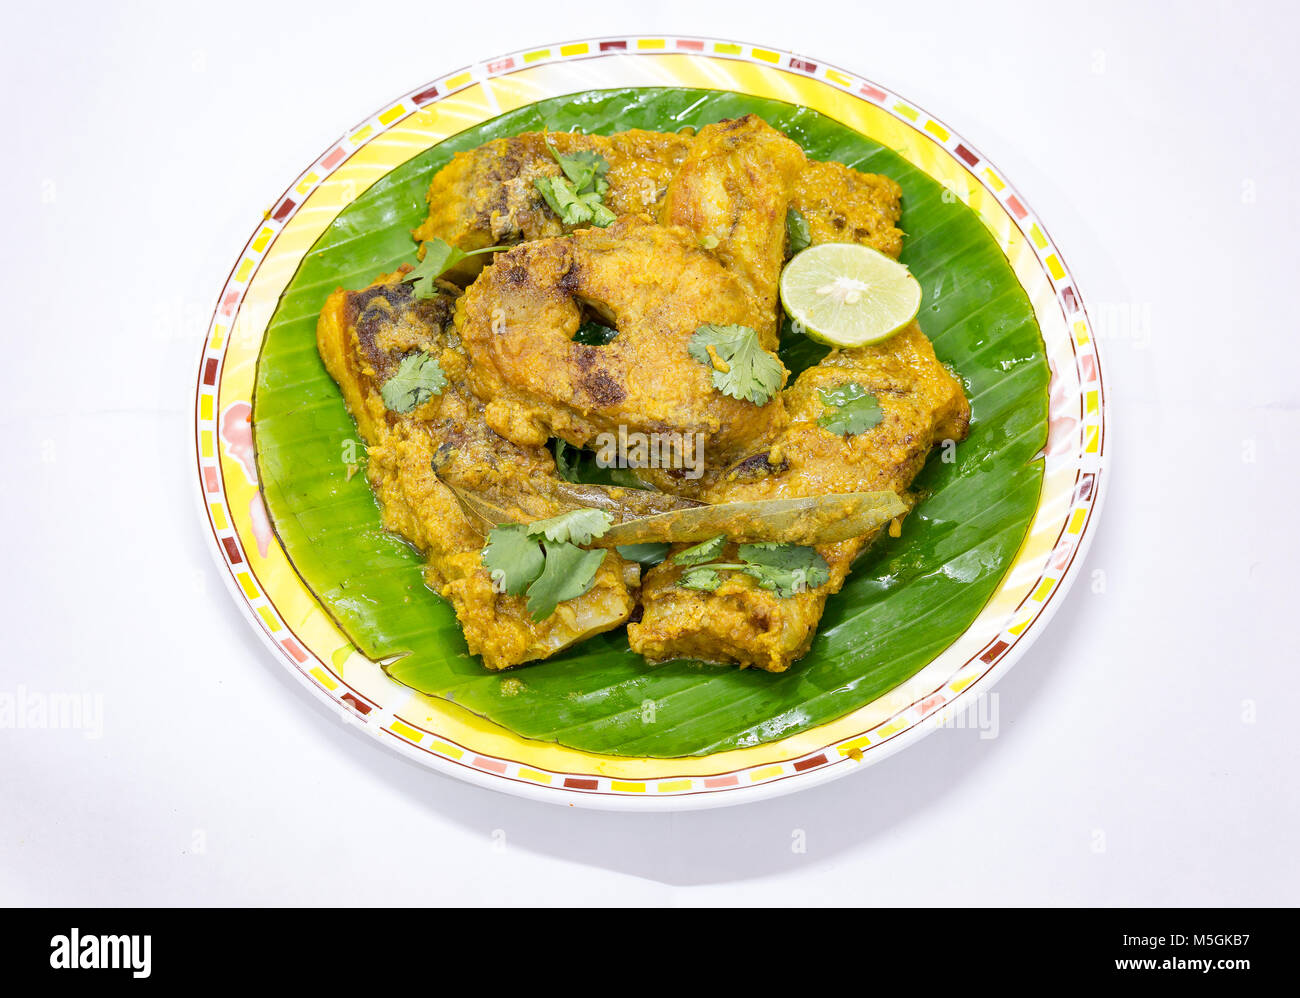 Lecker Fisch essen von Bengali Indian masala Rohu Fisch Curry im Bananenblatt mit Koriander und Zitronenscheibe serviert. Stockfoto